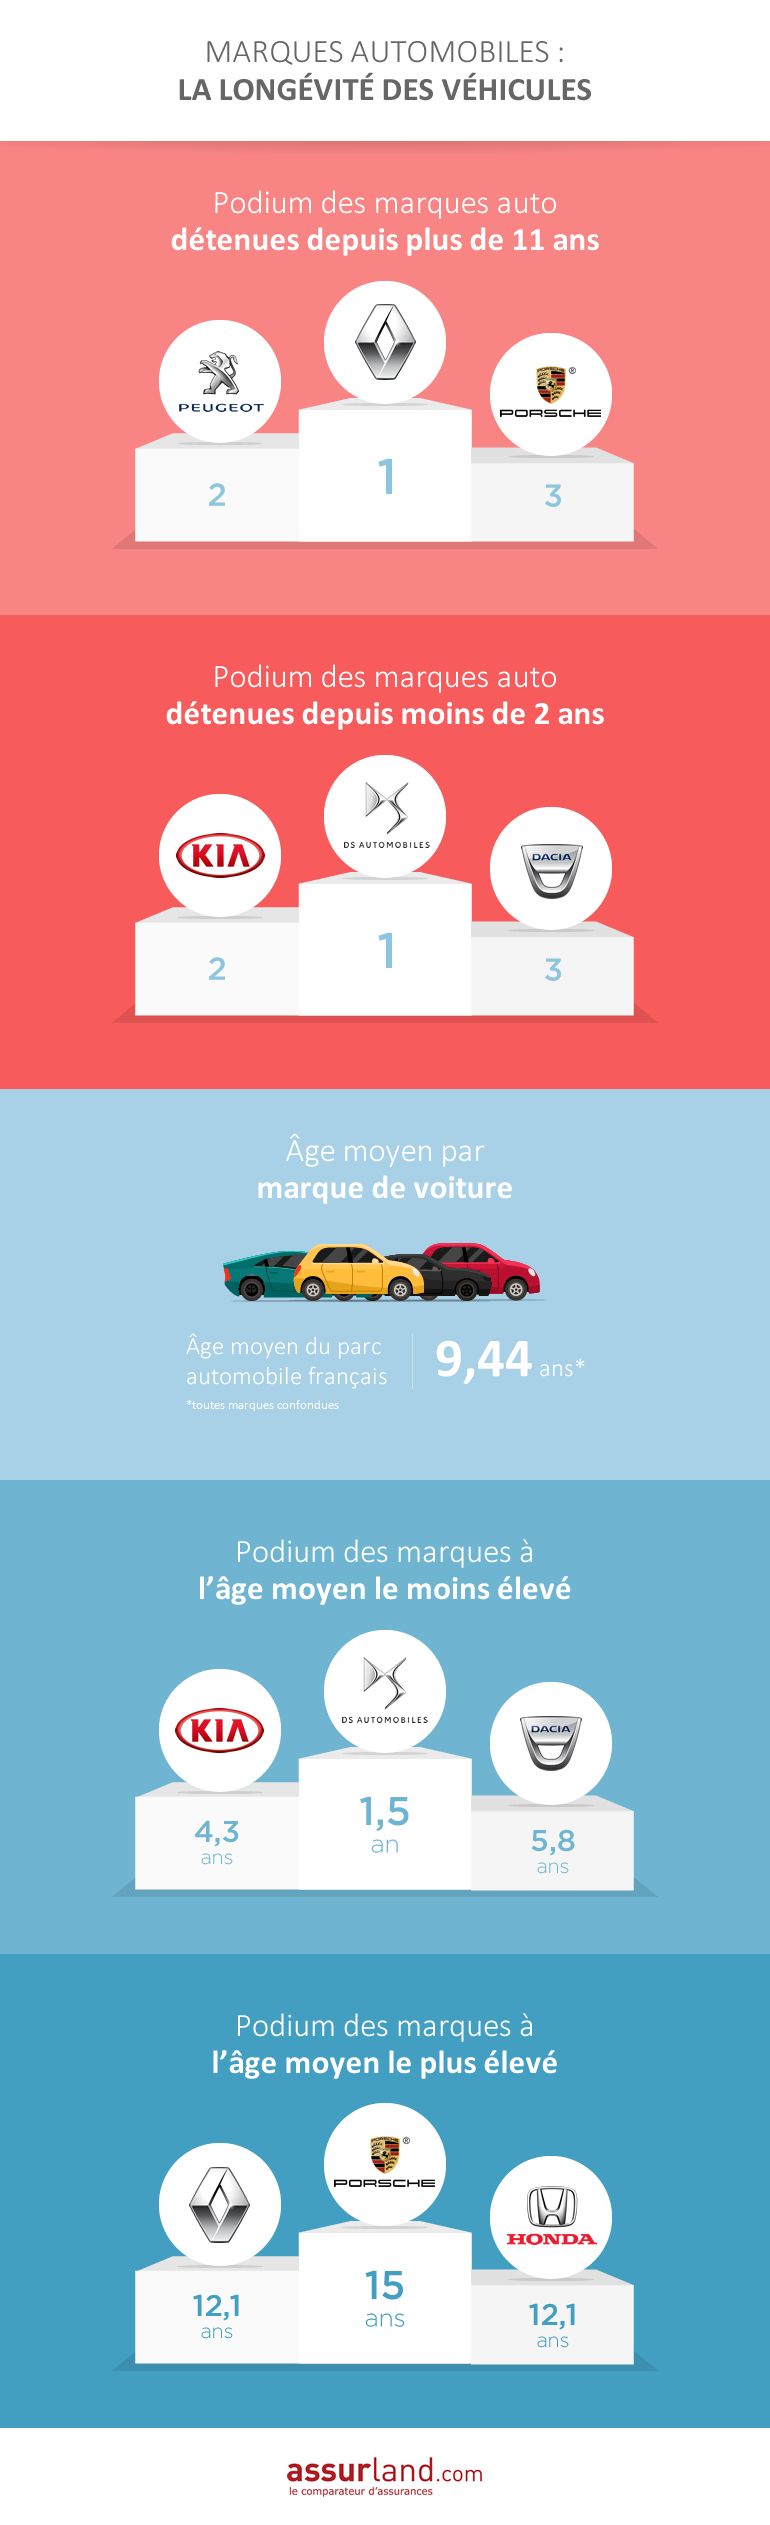 Marques auto : la longévité des véhicules